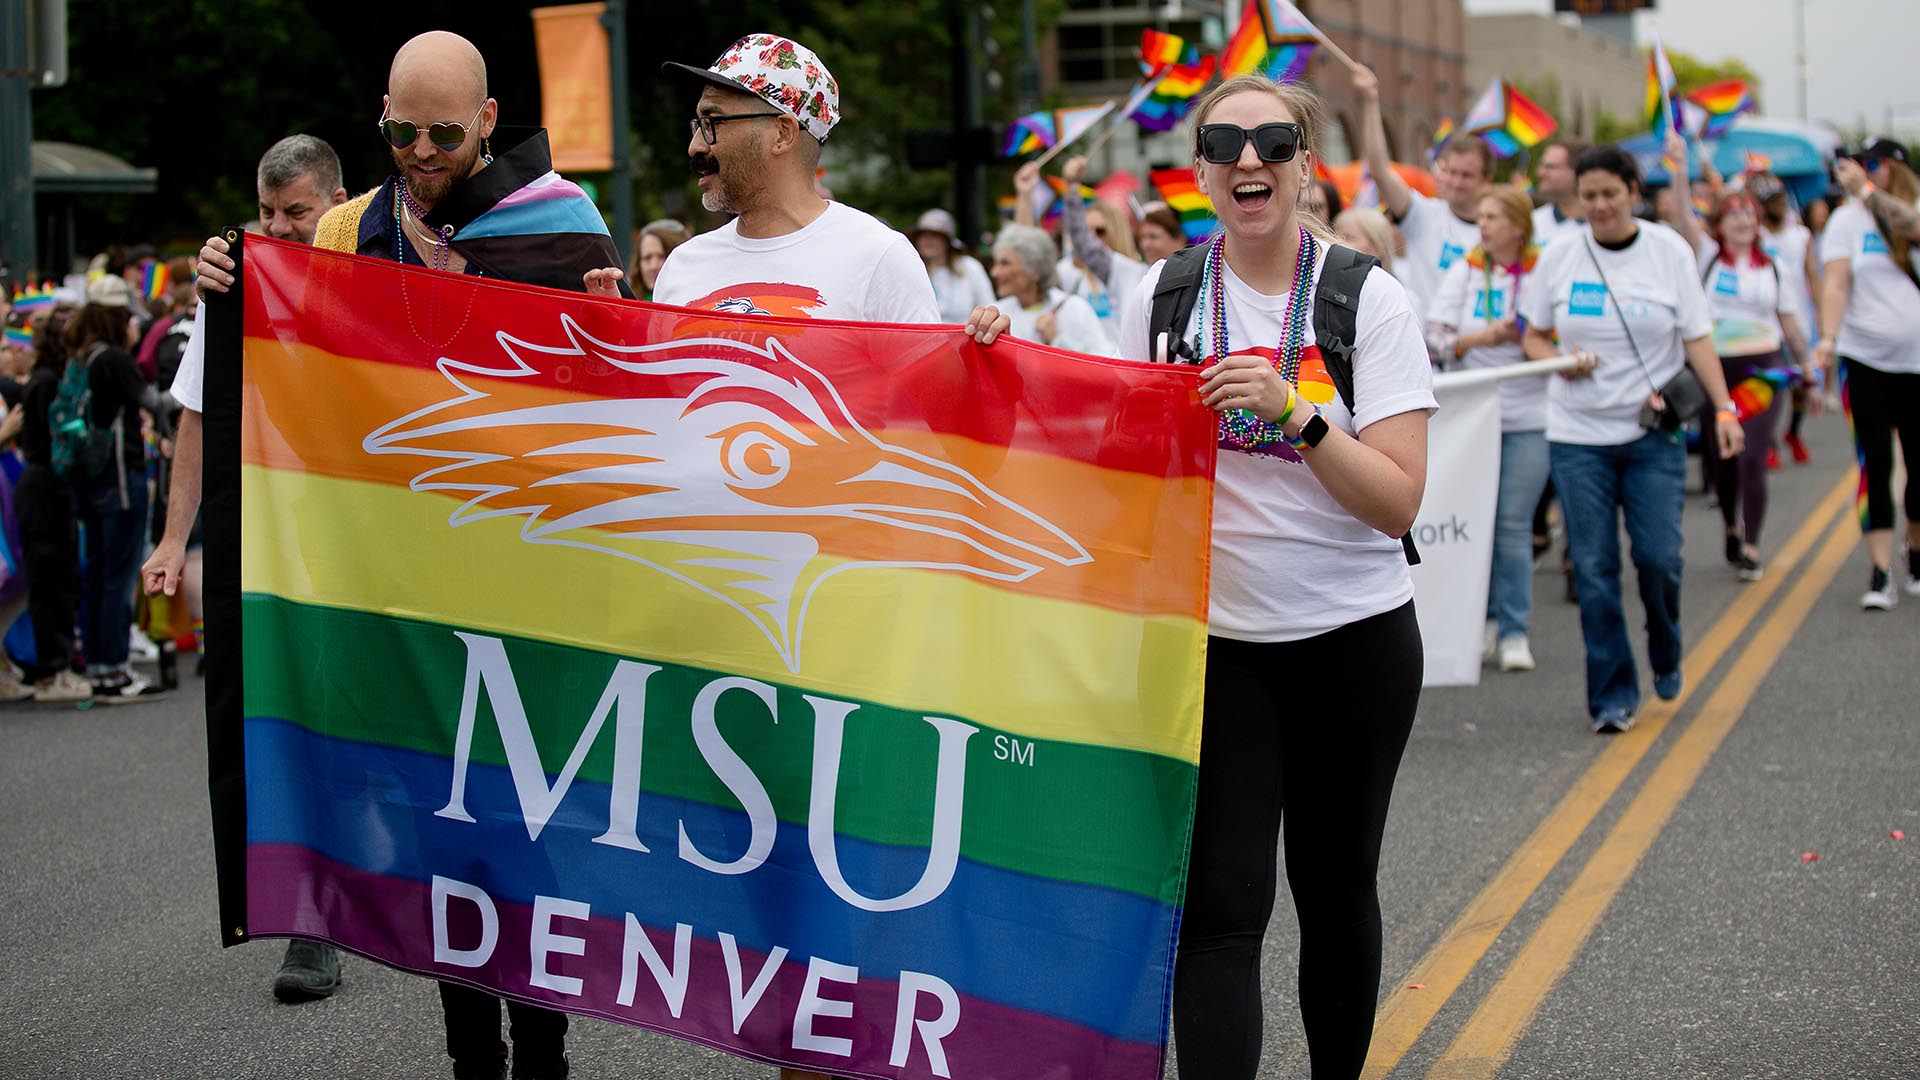 Kiel Oberlander, Damen Glover and Sarah Hunsinger lead MSU Denver's group in the Denver Pride Parade.